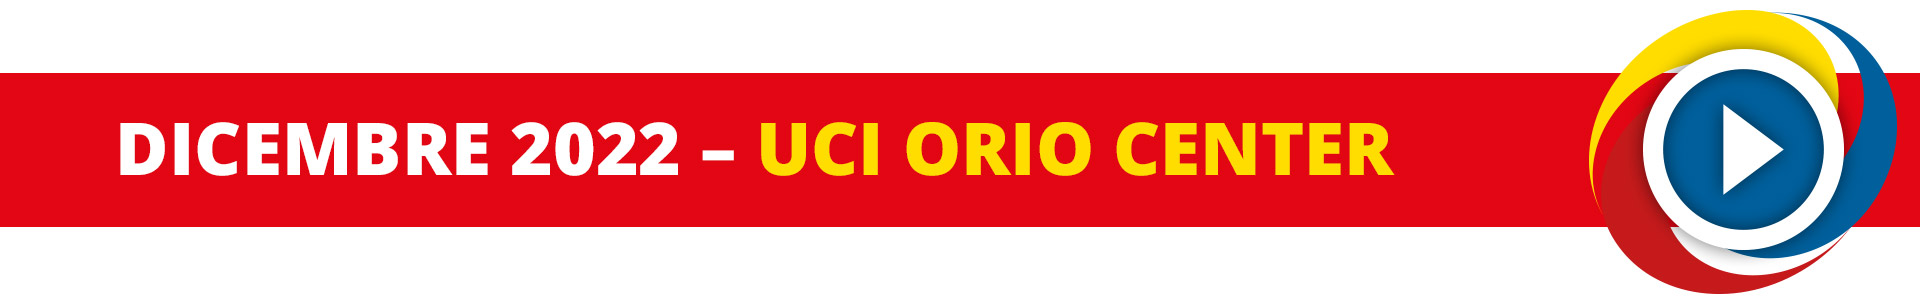 15 Ottobre 2020 - UCI Orio Center